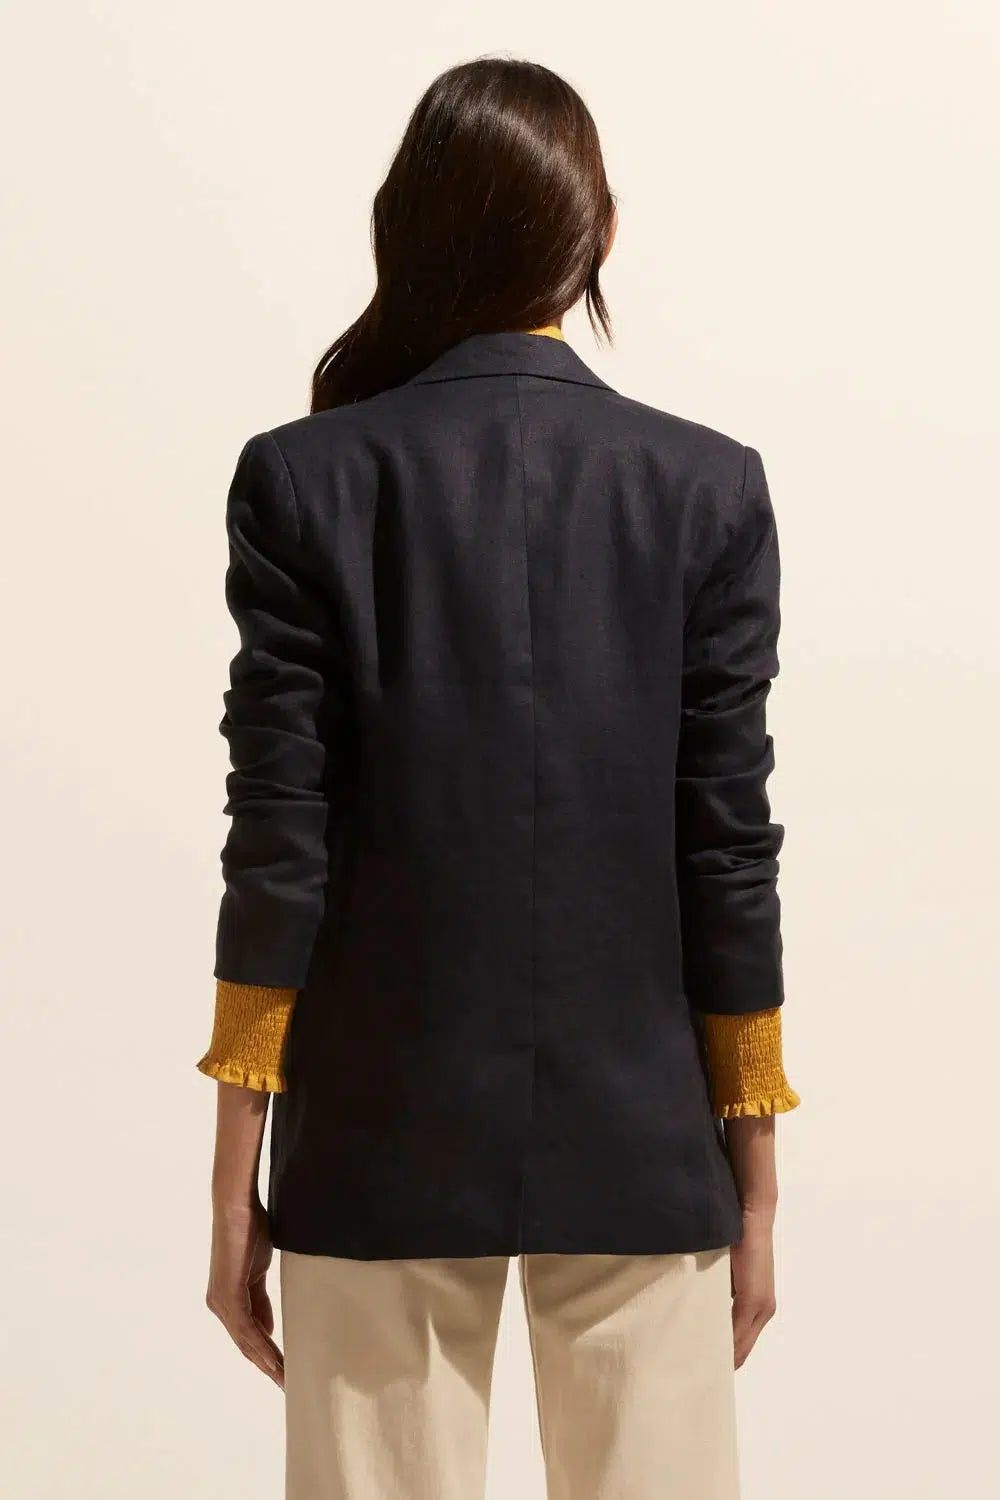 Extend Jacket - Indigo-Zoe Kratzmann-Lima & Co